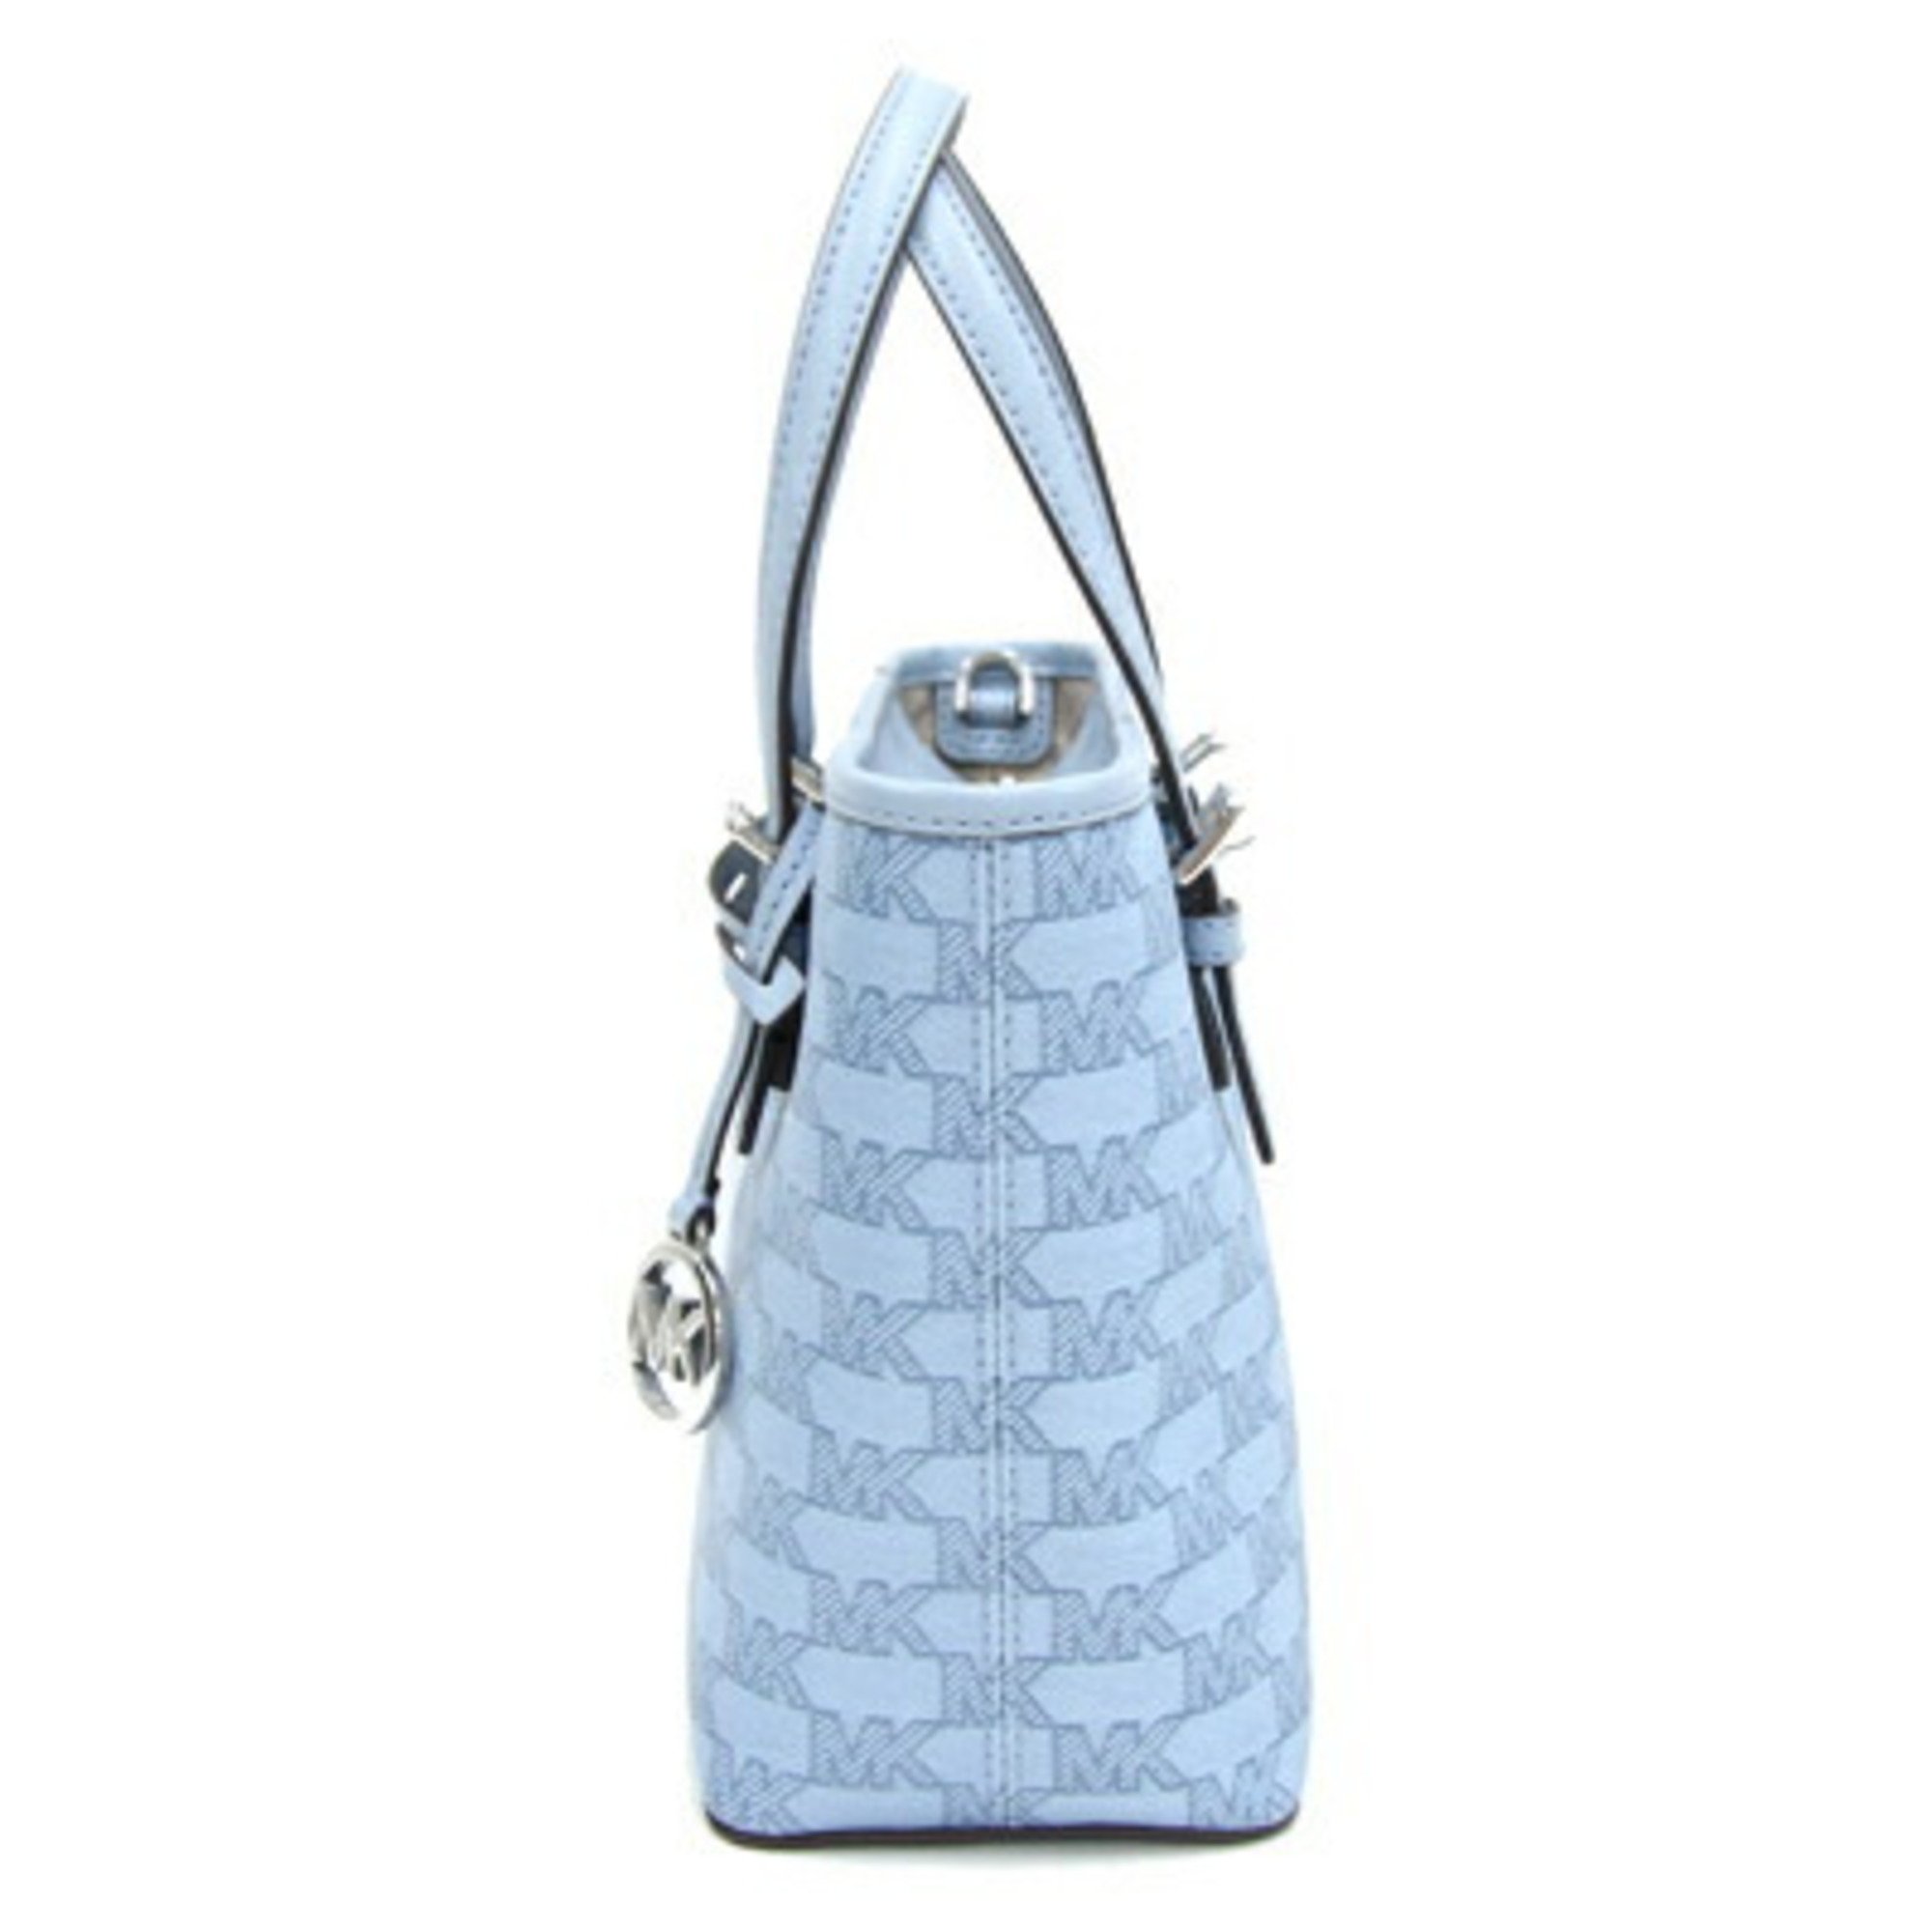 Michael Kors Handbag 35F3STVT0I Light Blue PVC Leather Bag for Women MICHAEL KORS